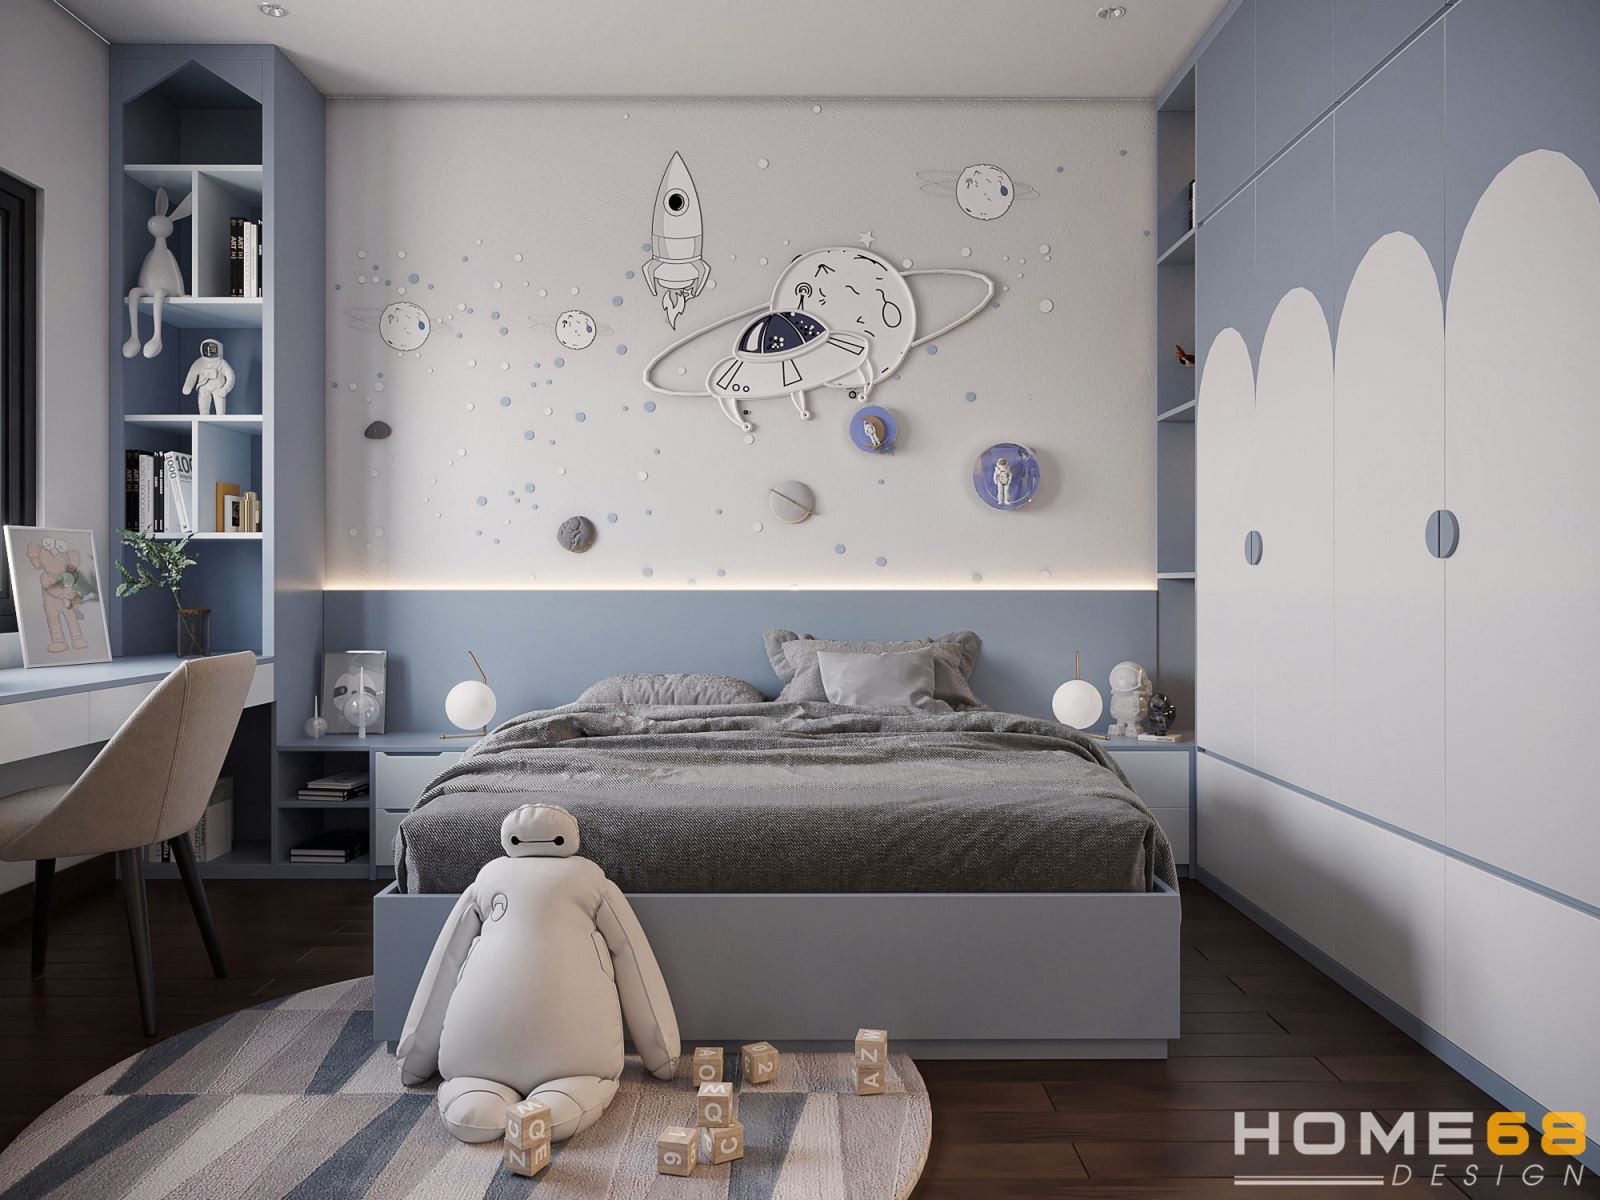 Thiết kế nội thất phòng ngủ cho con hiện đại, sinh động - HOME68